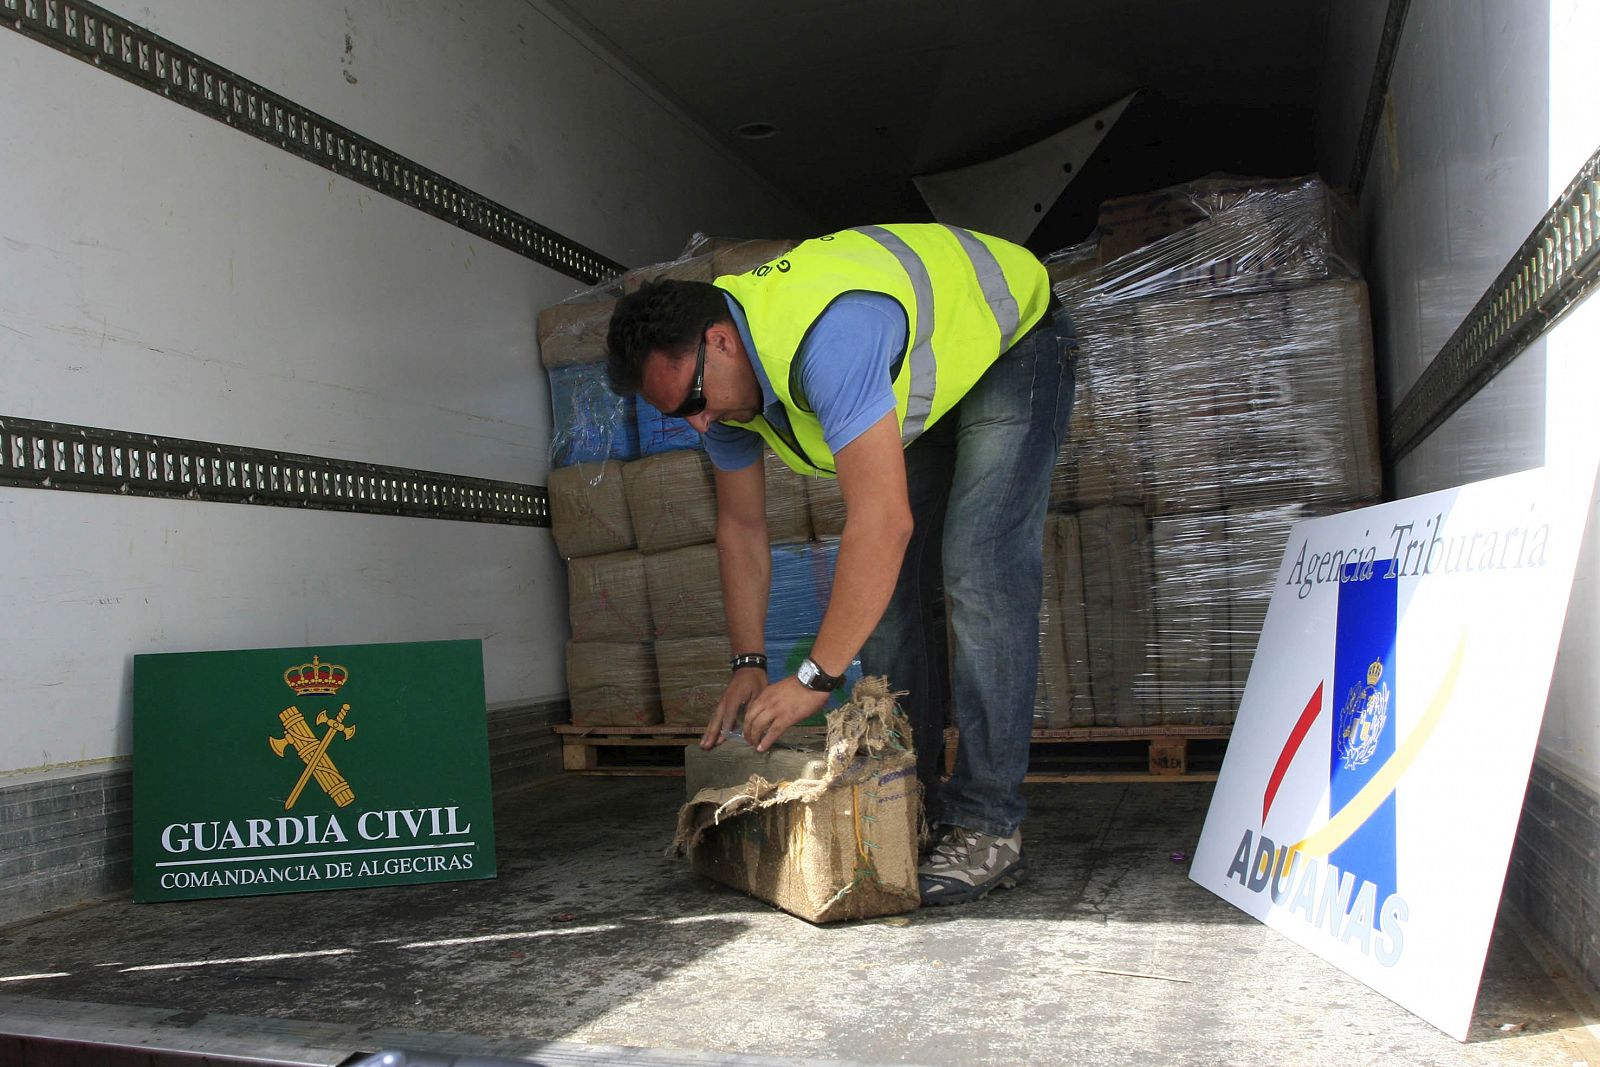 Un agente de la Guardia Civil inspecciona uno de los fardos de droga, 19,4 toneladas de polen y resina de hachís, que han incautado hoy en un semirremolque en el puerto de Algeciras (Cádiz) procedente de Tánger (Marruecos).